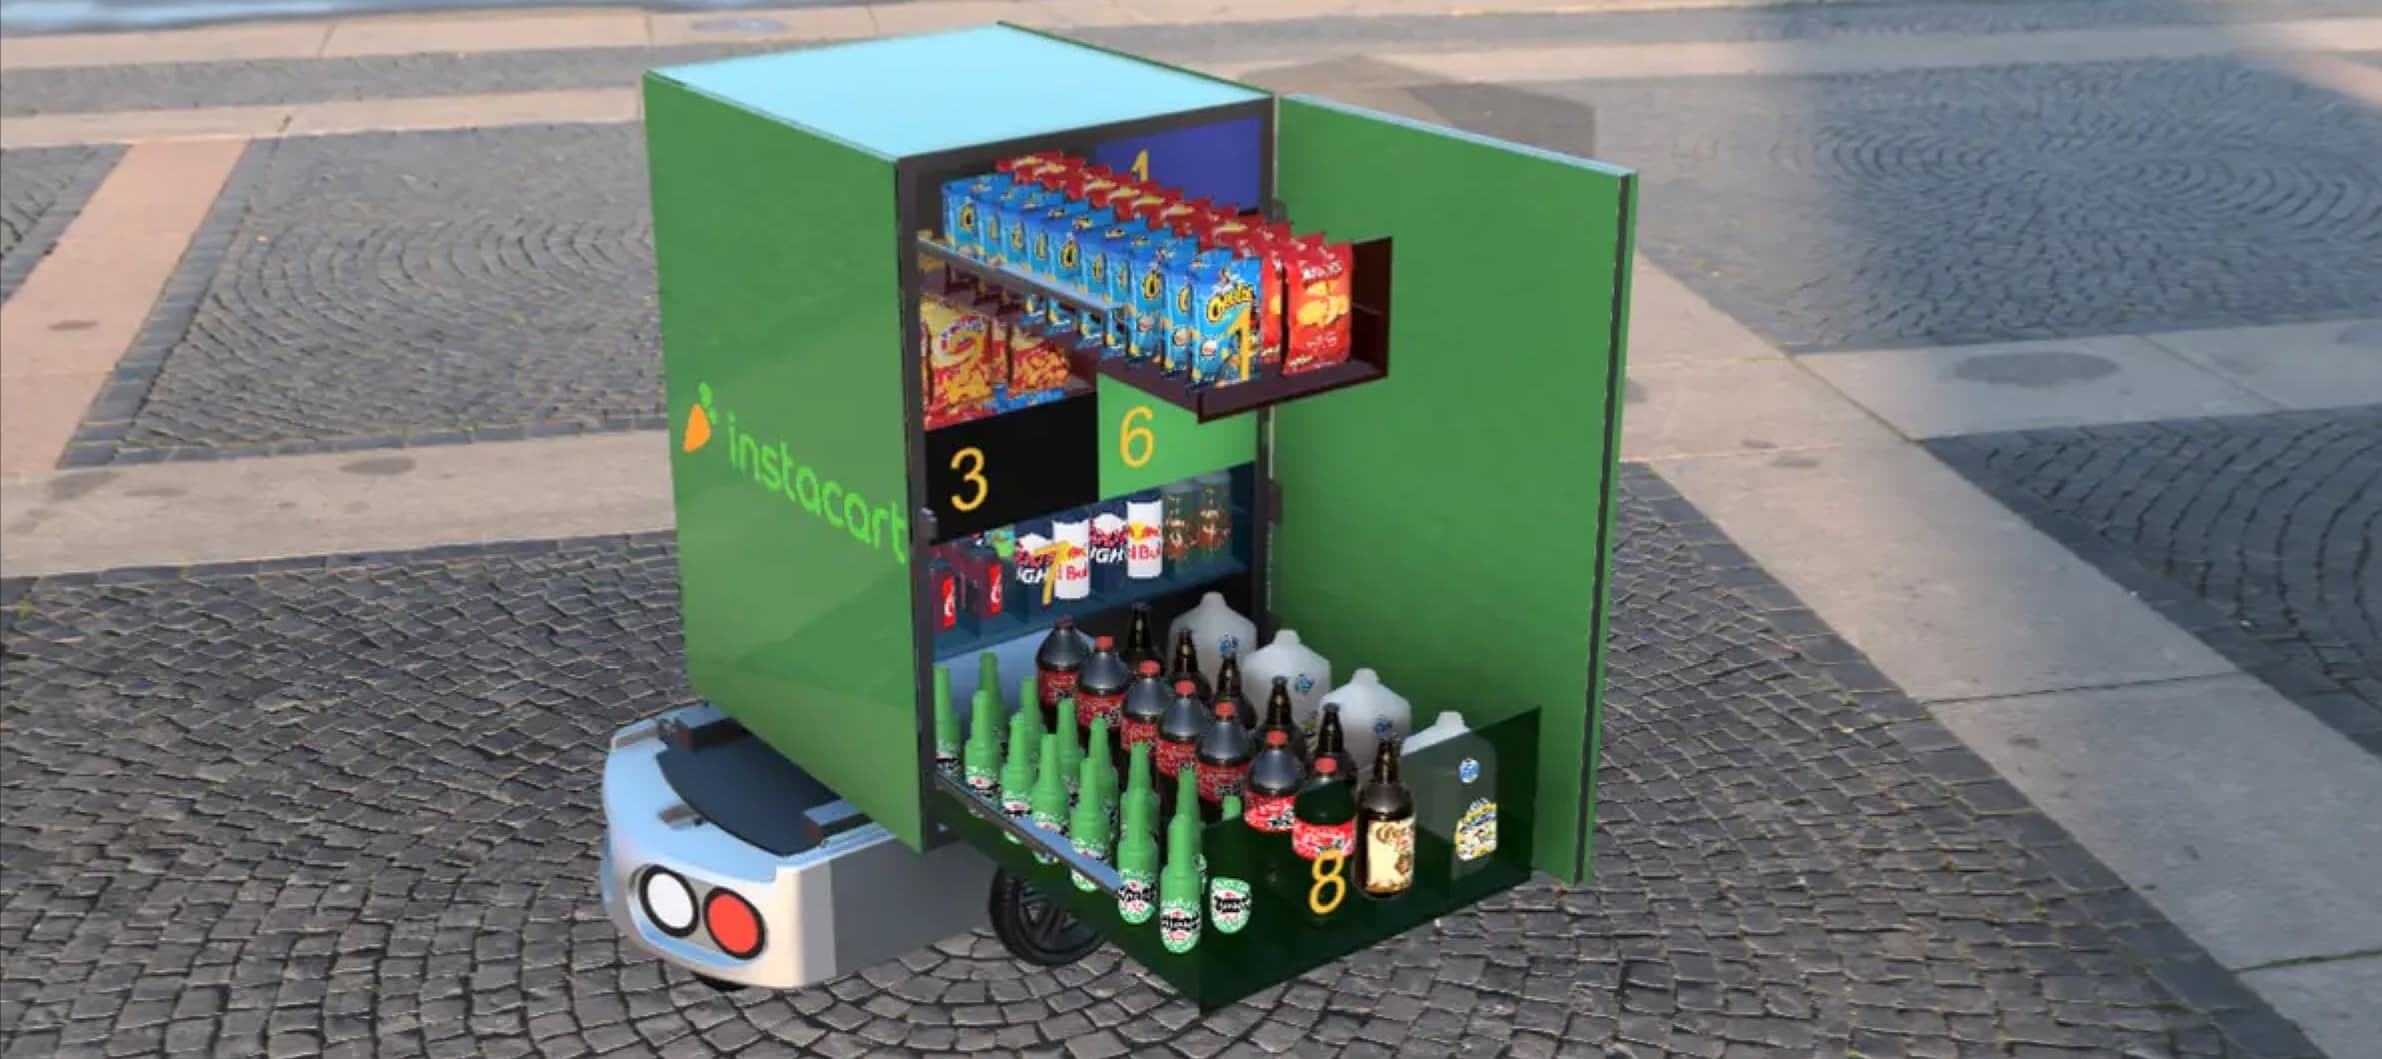 Фото новости: "Сервис доставки продуктов Instacart тестирует «склады на колесах»"